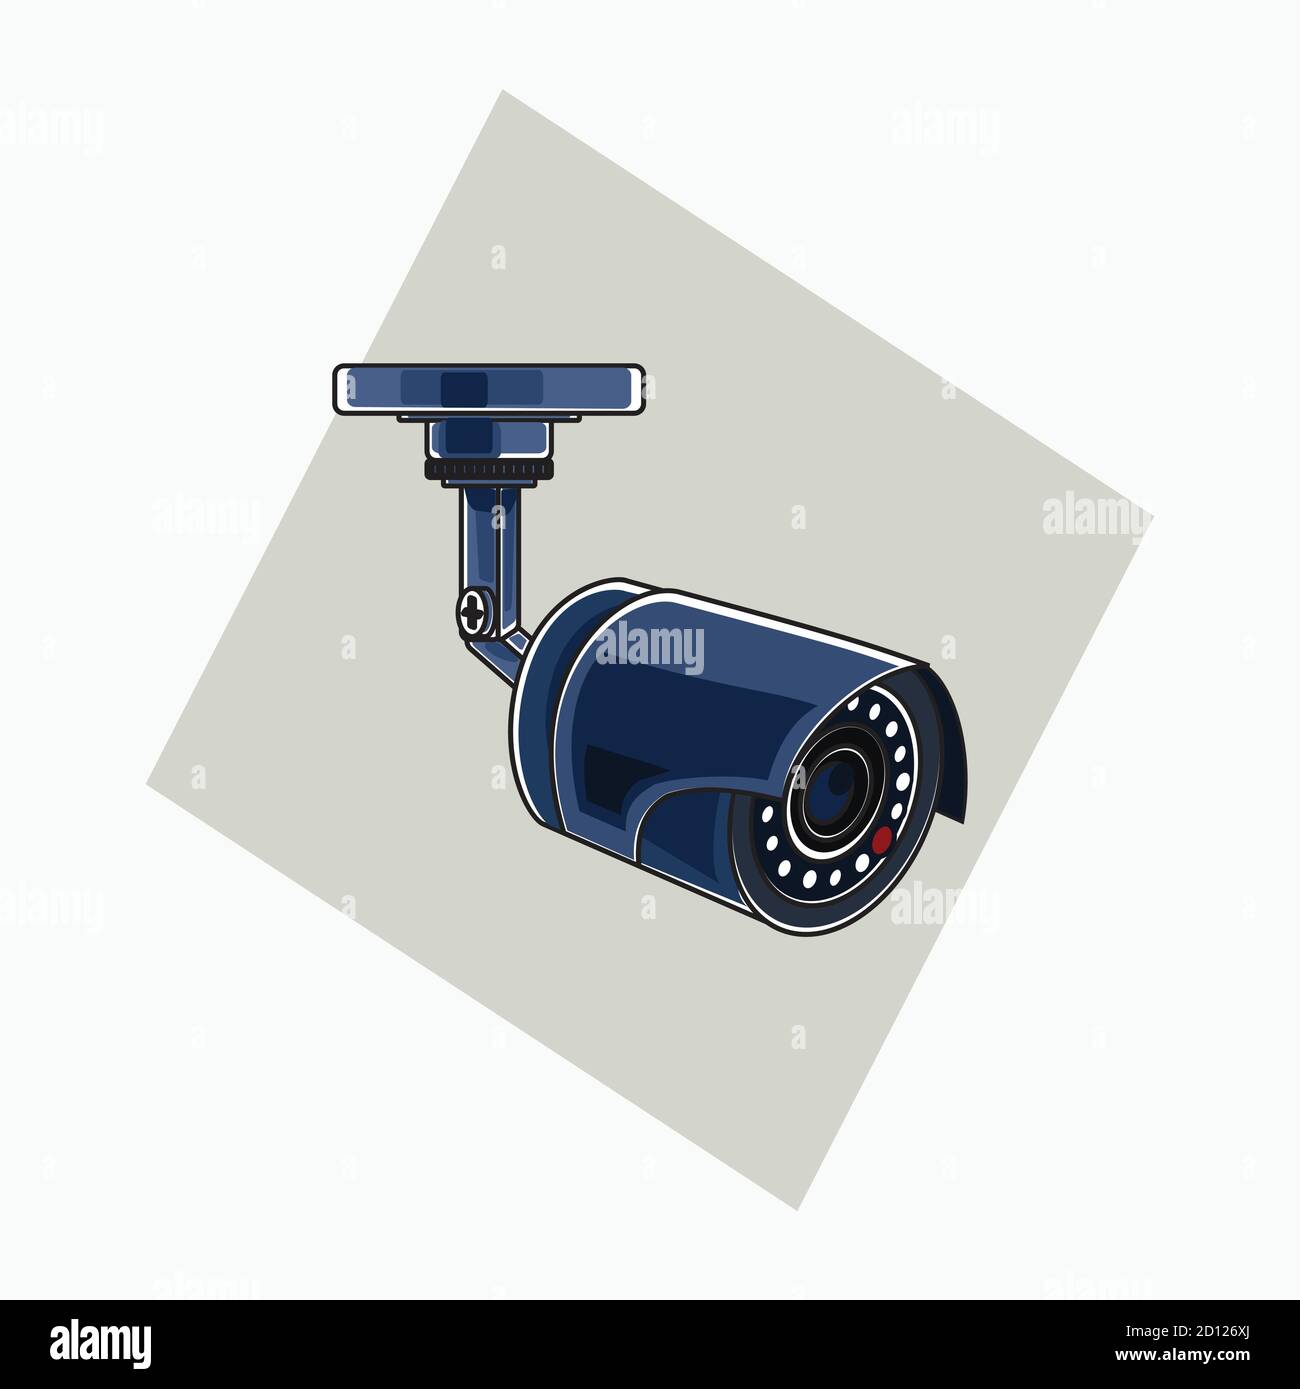 Ilustraciones vectoriales - CCTV azul (cámara de vigilancia) - estilo de dibujos animados planos Ilustración del Vector